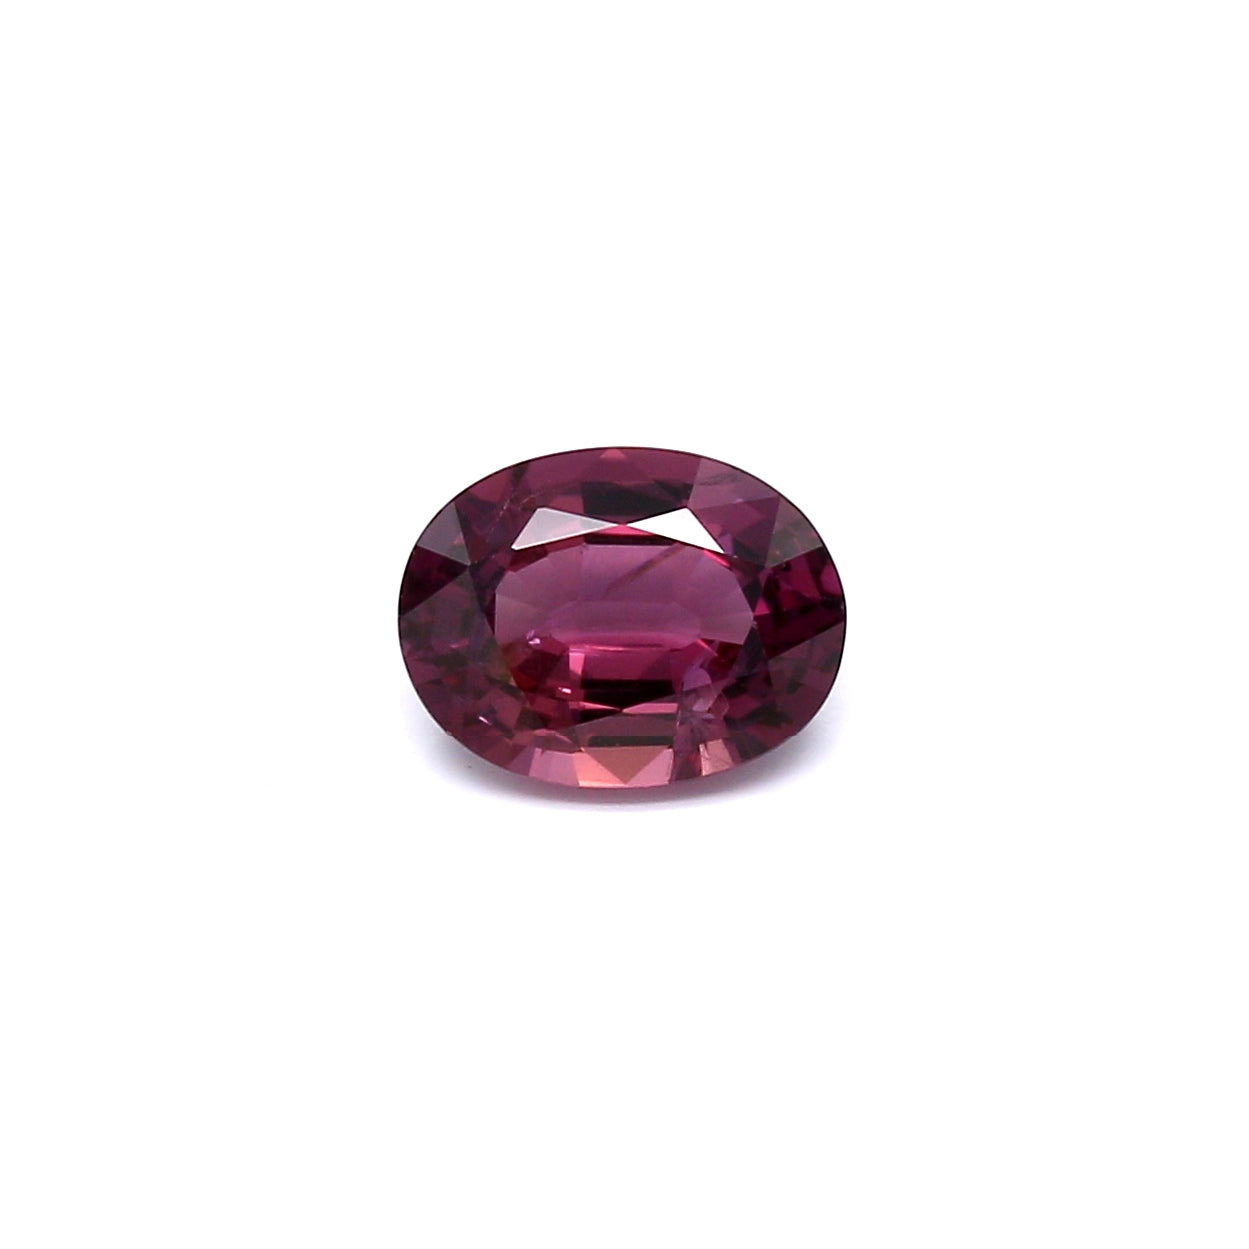 1.40ct Pink/Red, Oval Sapphire, No Heat, Sri Lanka - 7.83 x 5.98 x 3.43mm